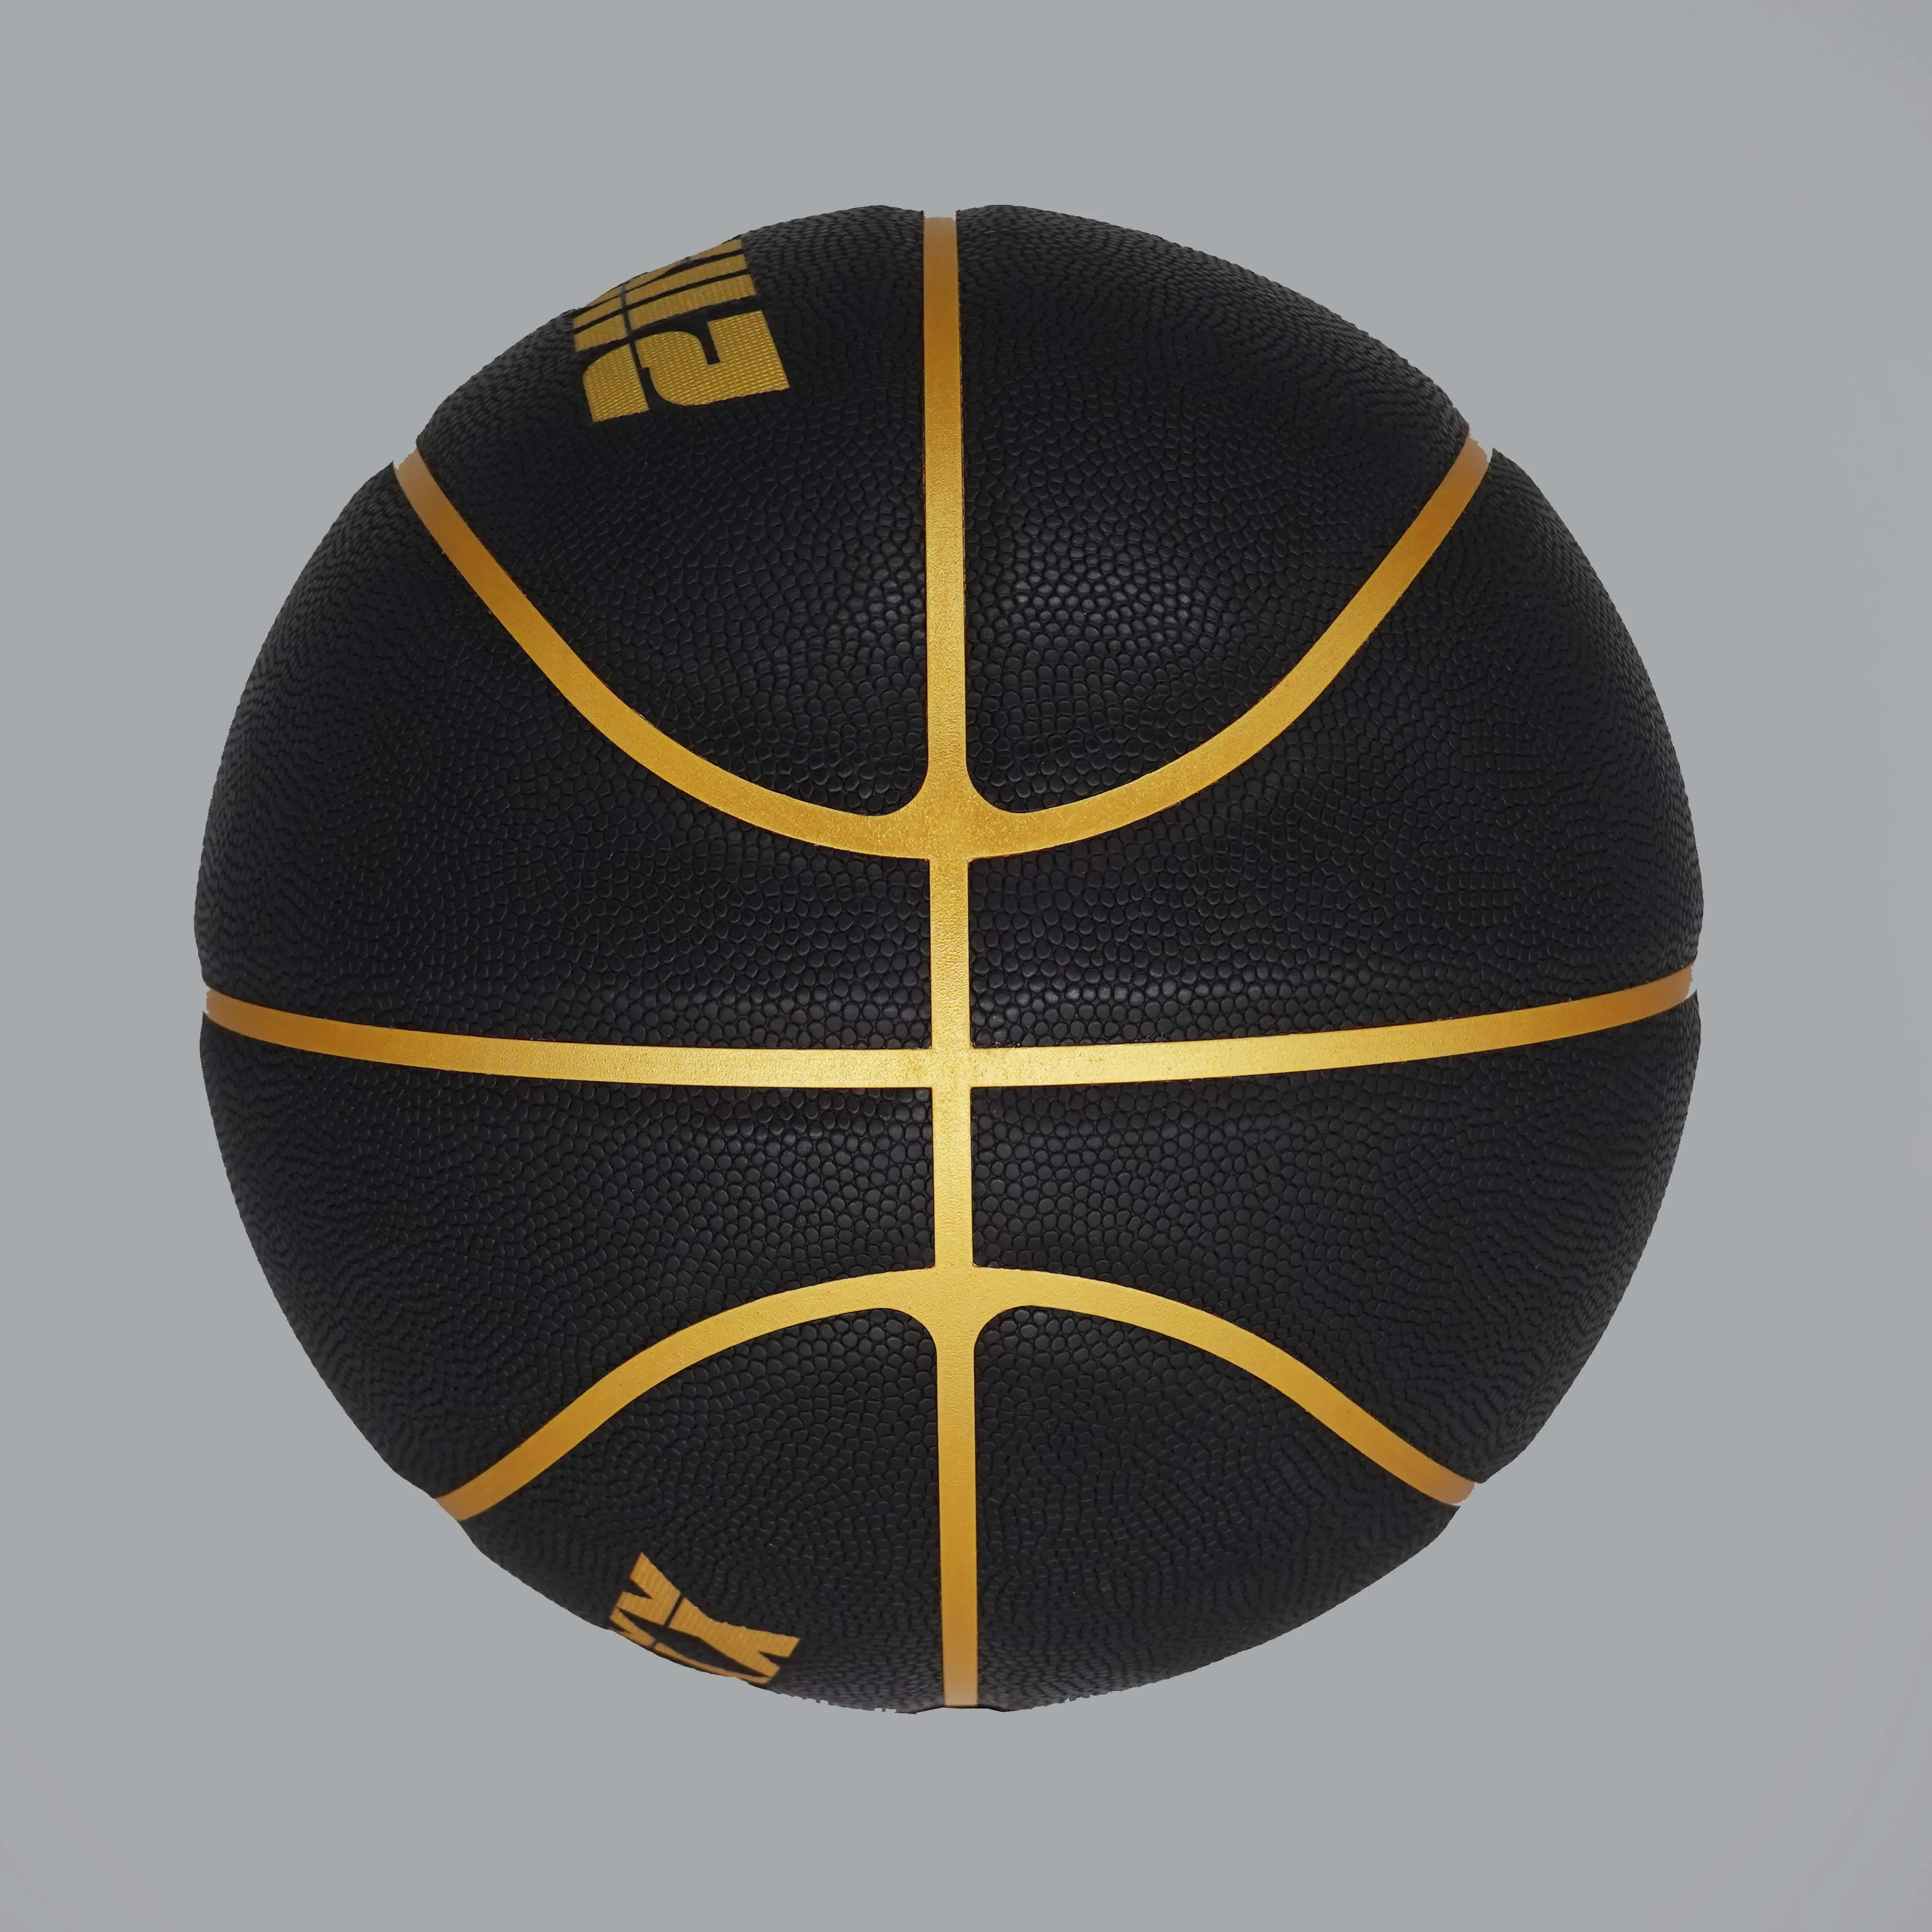 כדור כדורסל באיכות גבוהה גודל רשמי משקל לוגו מותאם אישית כדורסל עור PU כדורי כדורסל ניילון גומי כבדים